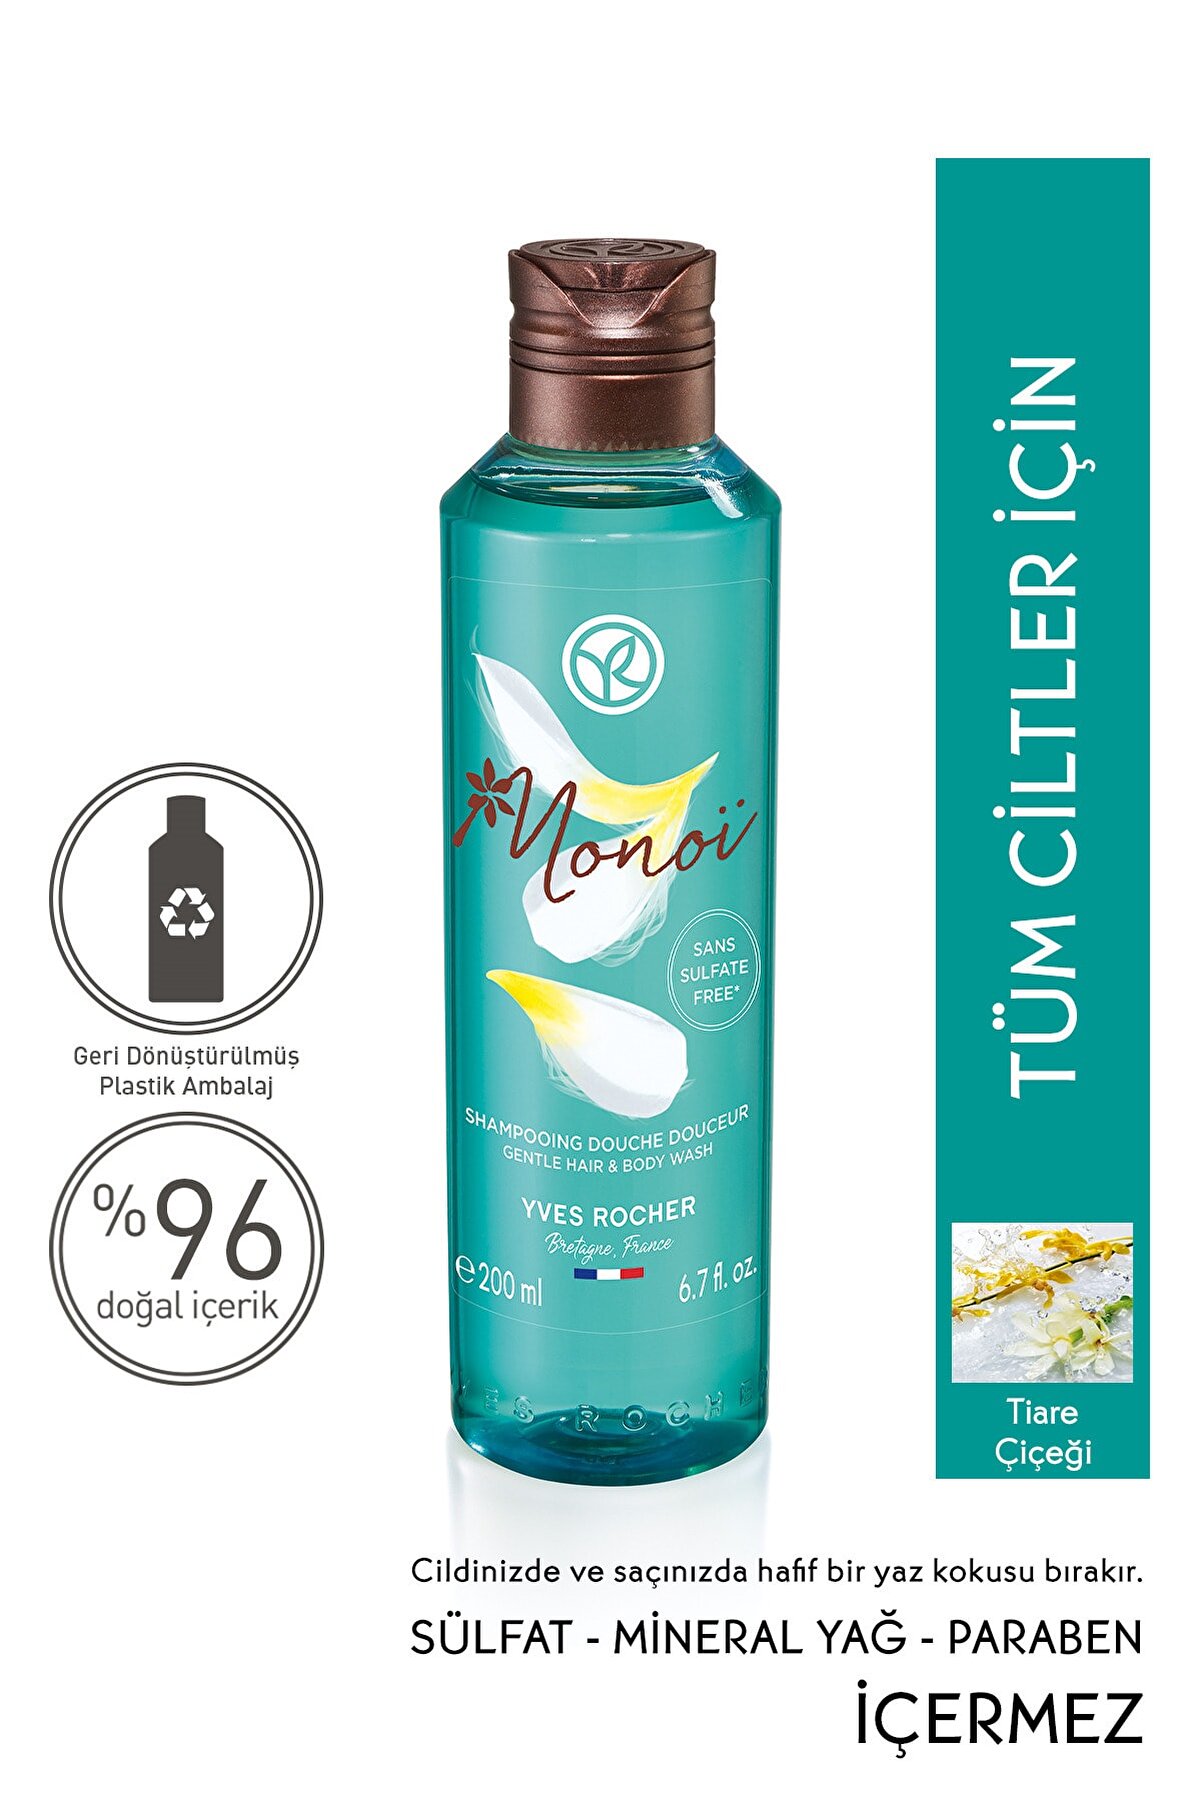 Yves Rocher Monoi Saç Ve Vücut Şampuanı - 200 Ml